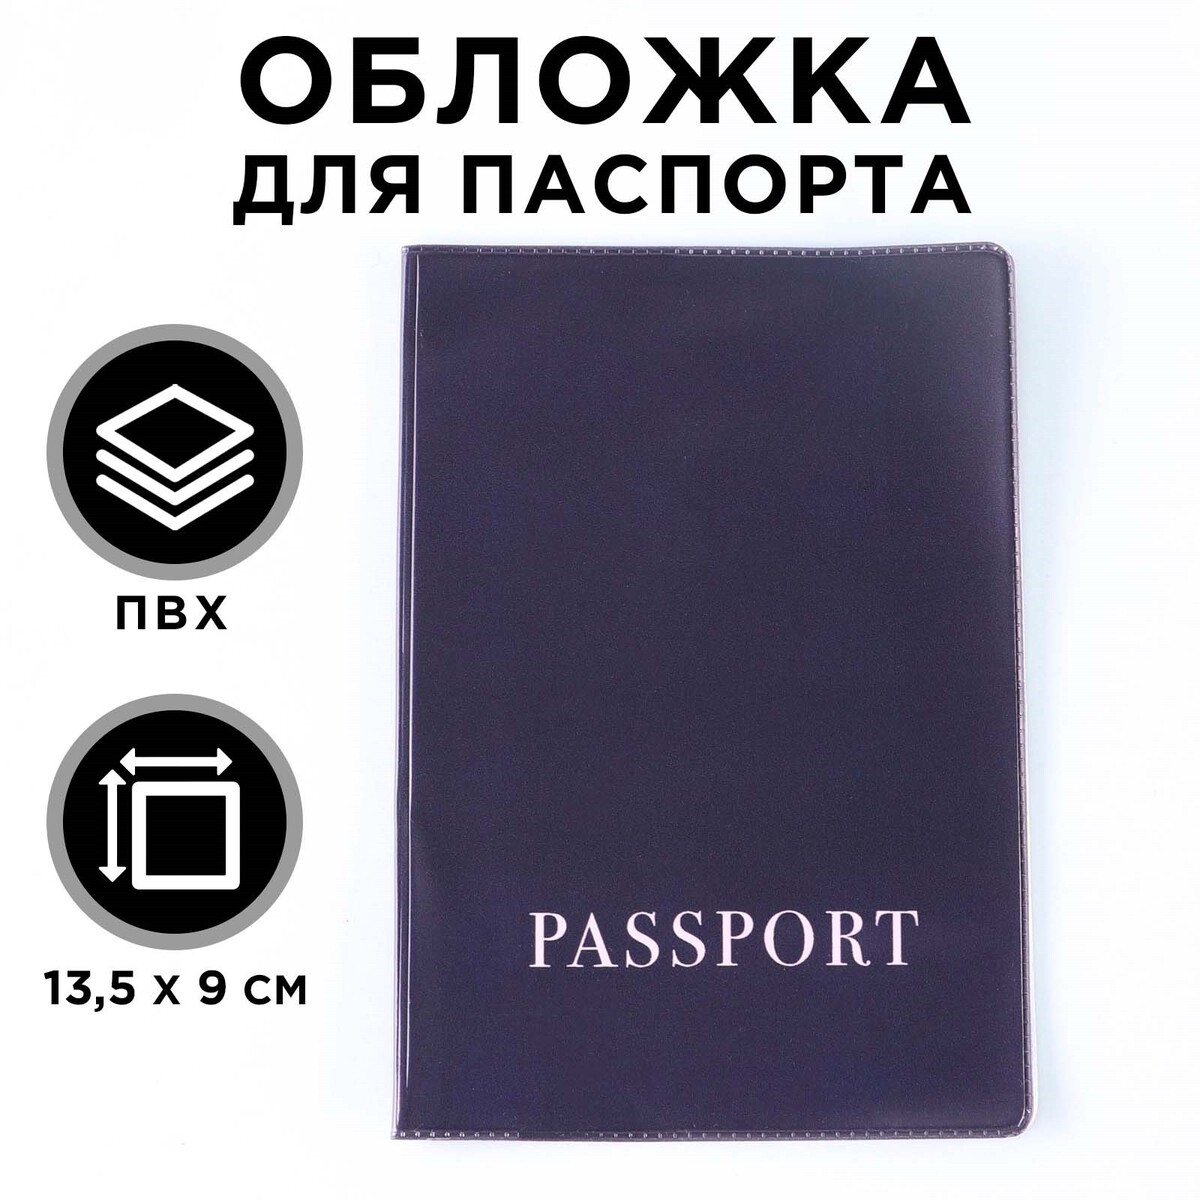 Обложка для паспорта, пвх, оттенок графитовый обложка для паспорта пвх оттенок кардинал